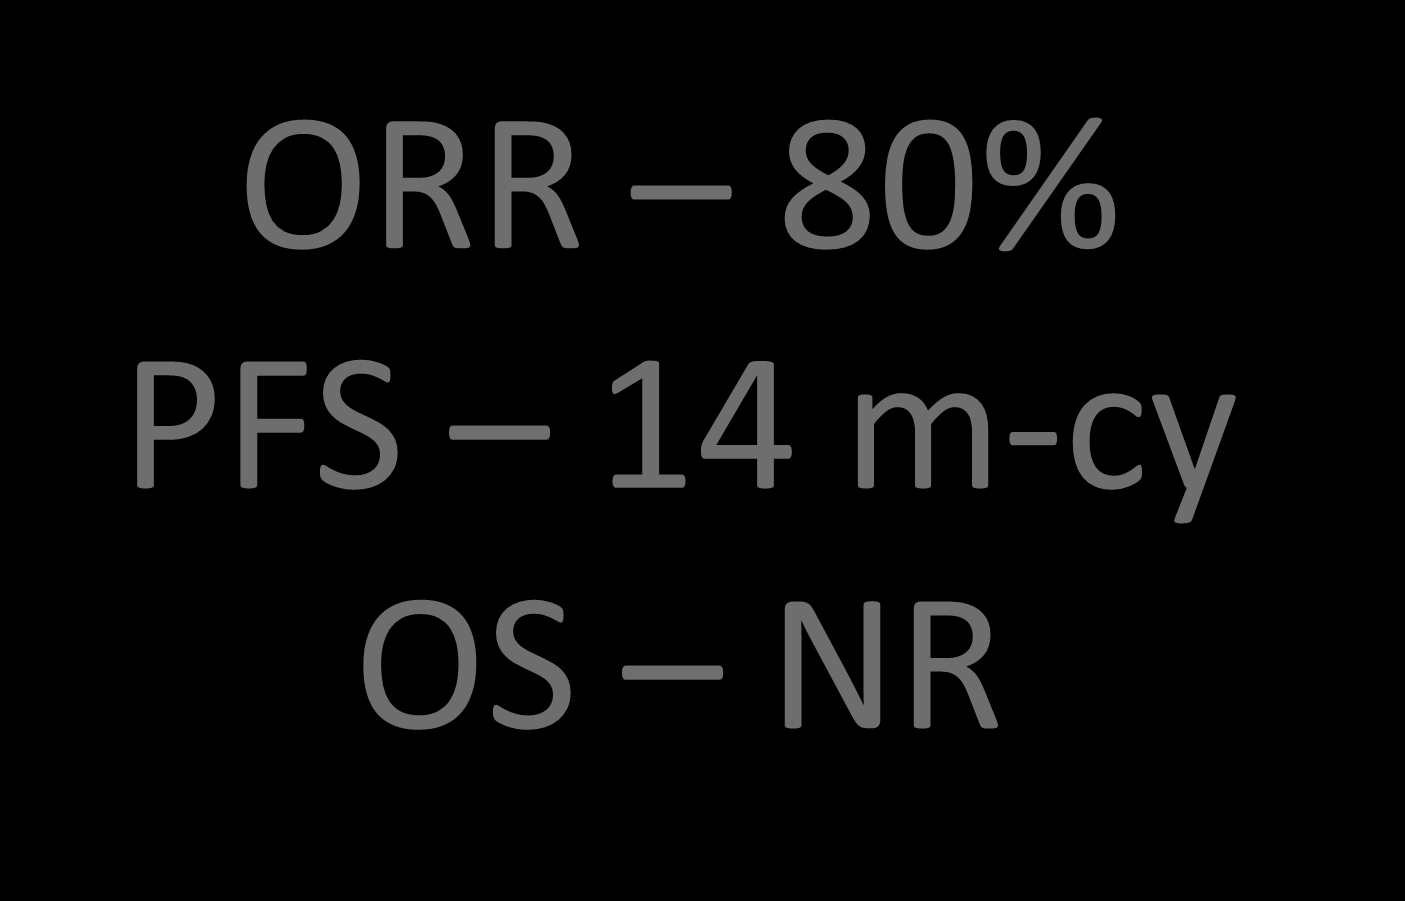 ORR 80% PFS